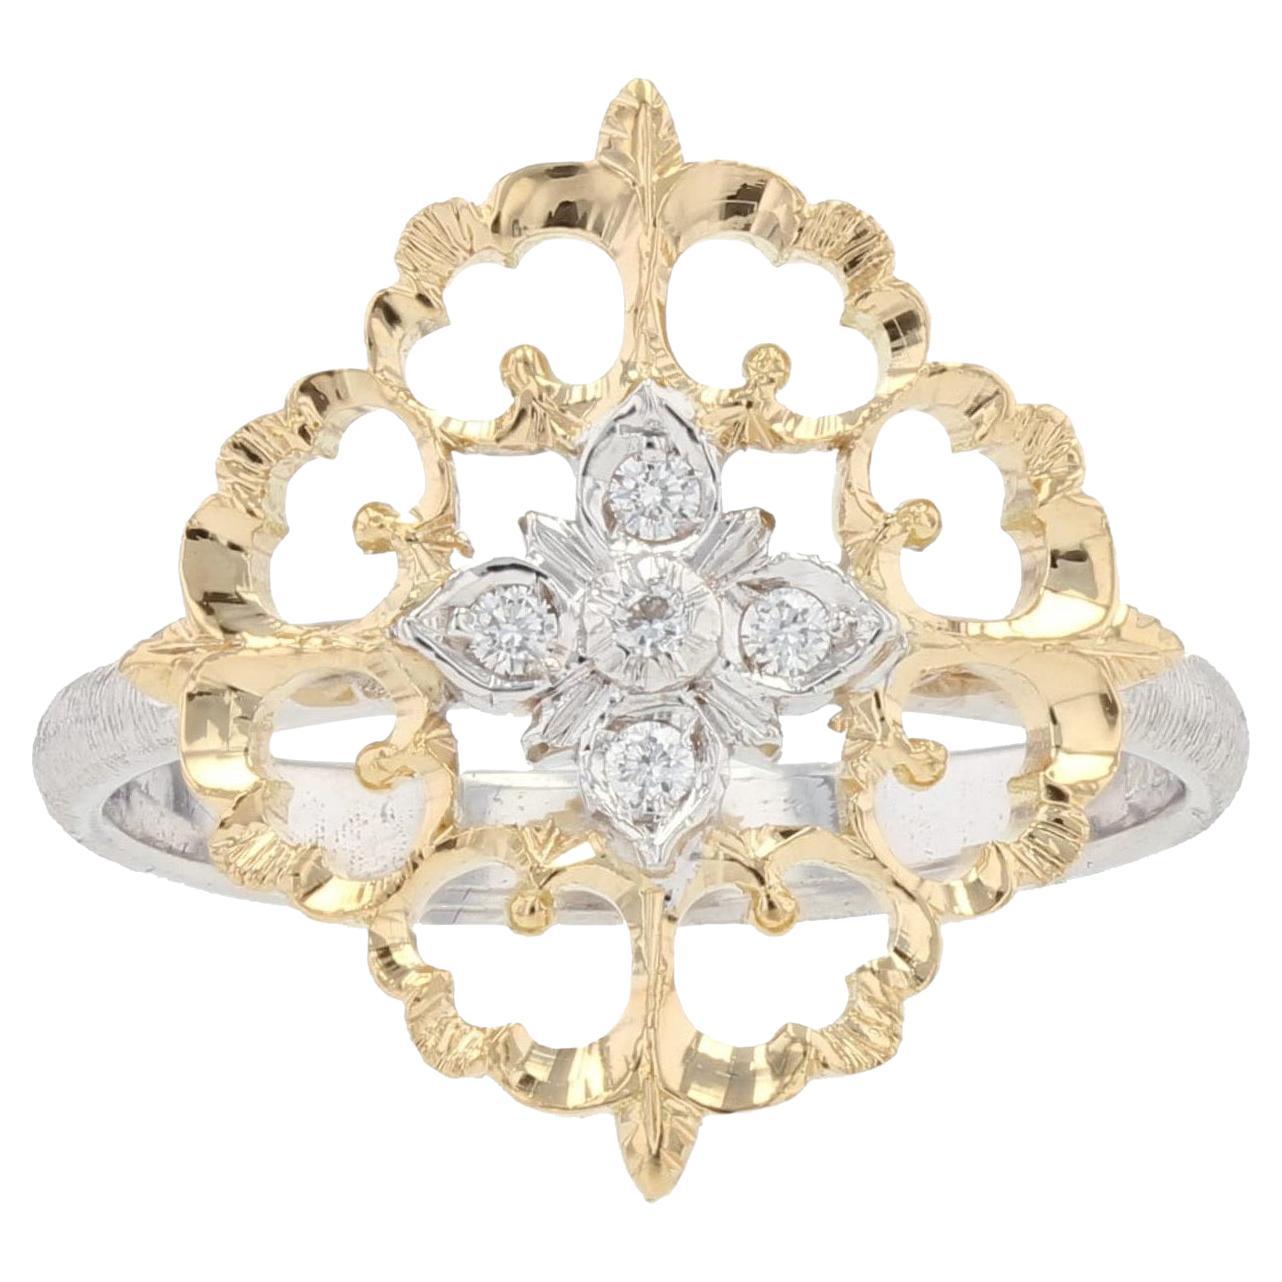 Grande bague arabesque moderne en or jaune et blanc 18 carats avec diamants, grand modèle